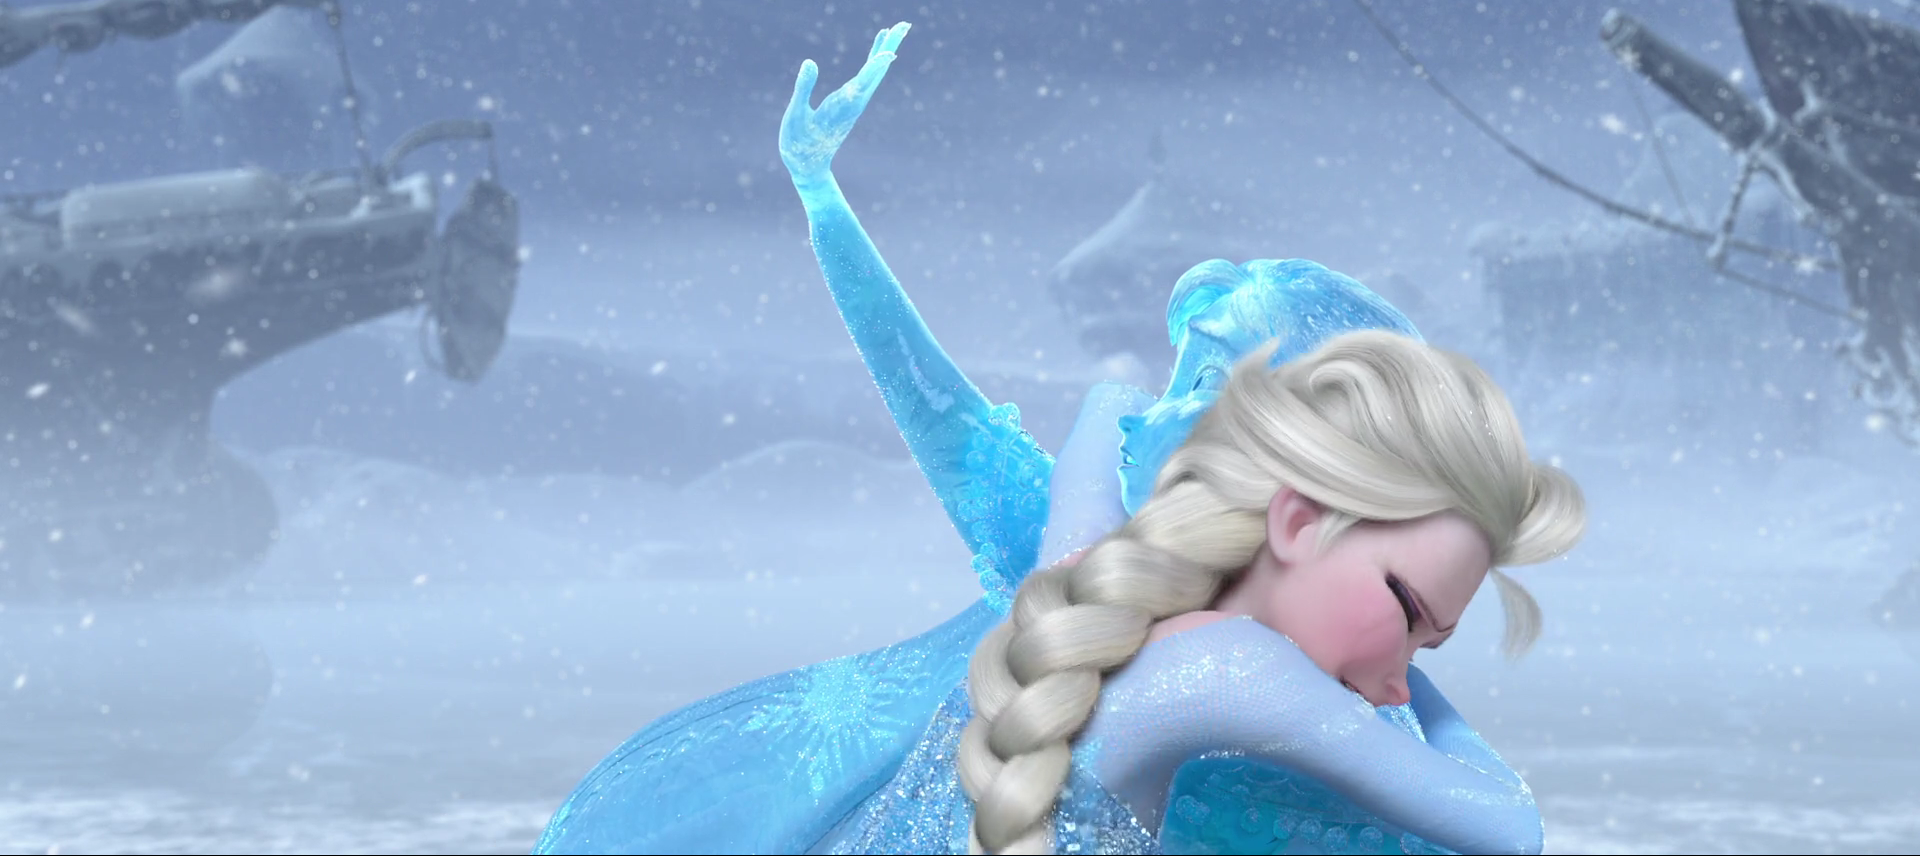 Walt Disney's Frozen movie poster : 11 x 17 inches : Frozen poster (f) 